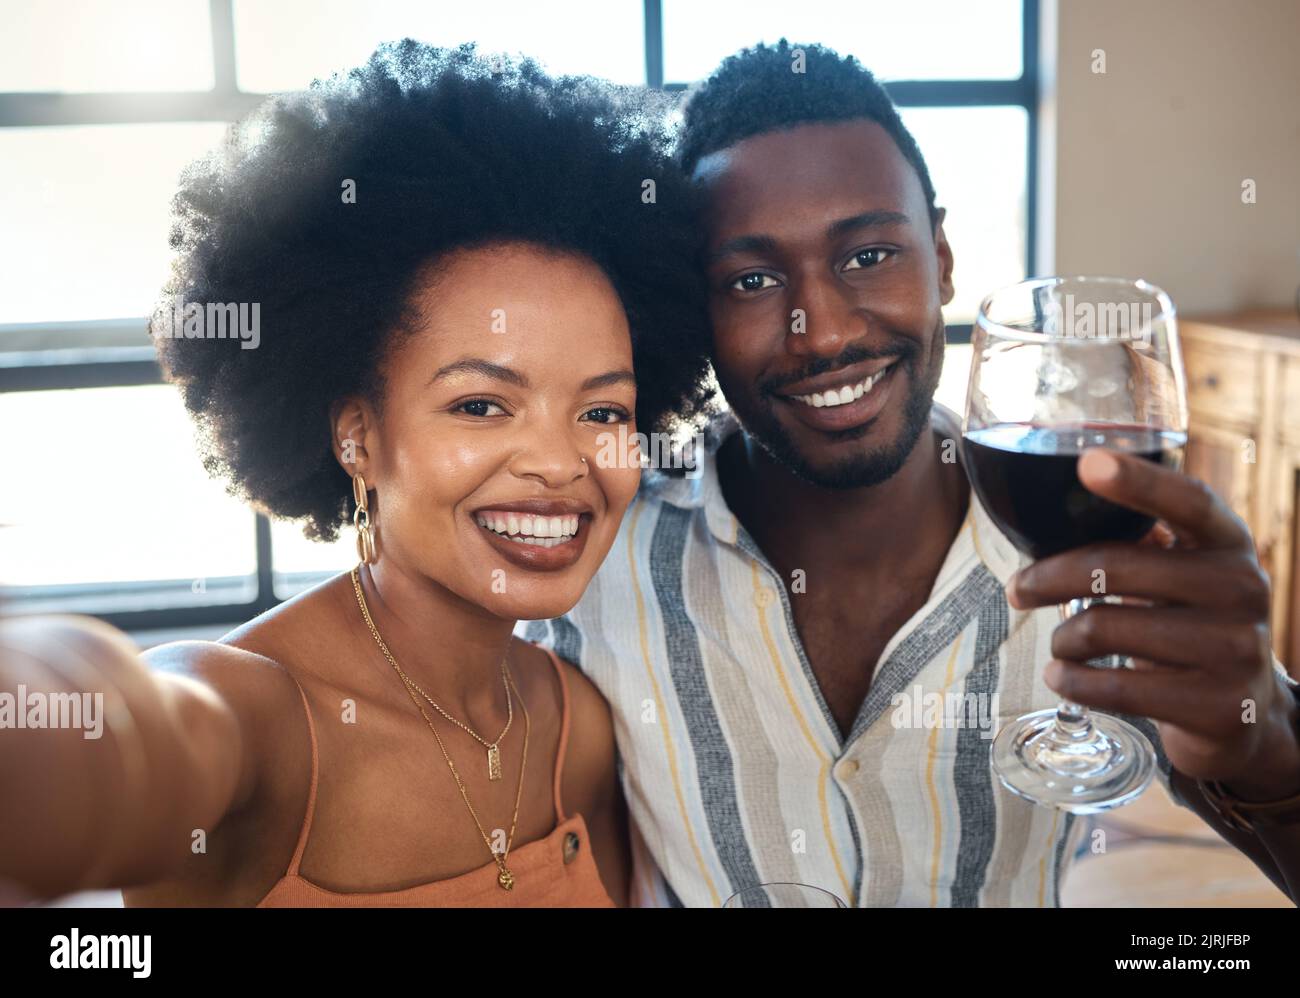 Coppia selfie per i social media per festeggiare con un bicchiere di vino, champagne e bevande alcoliche per un felice rapporto insieme in un ristorante caffetteria Foto Stock